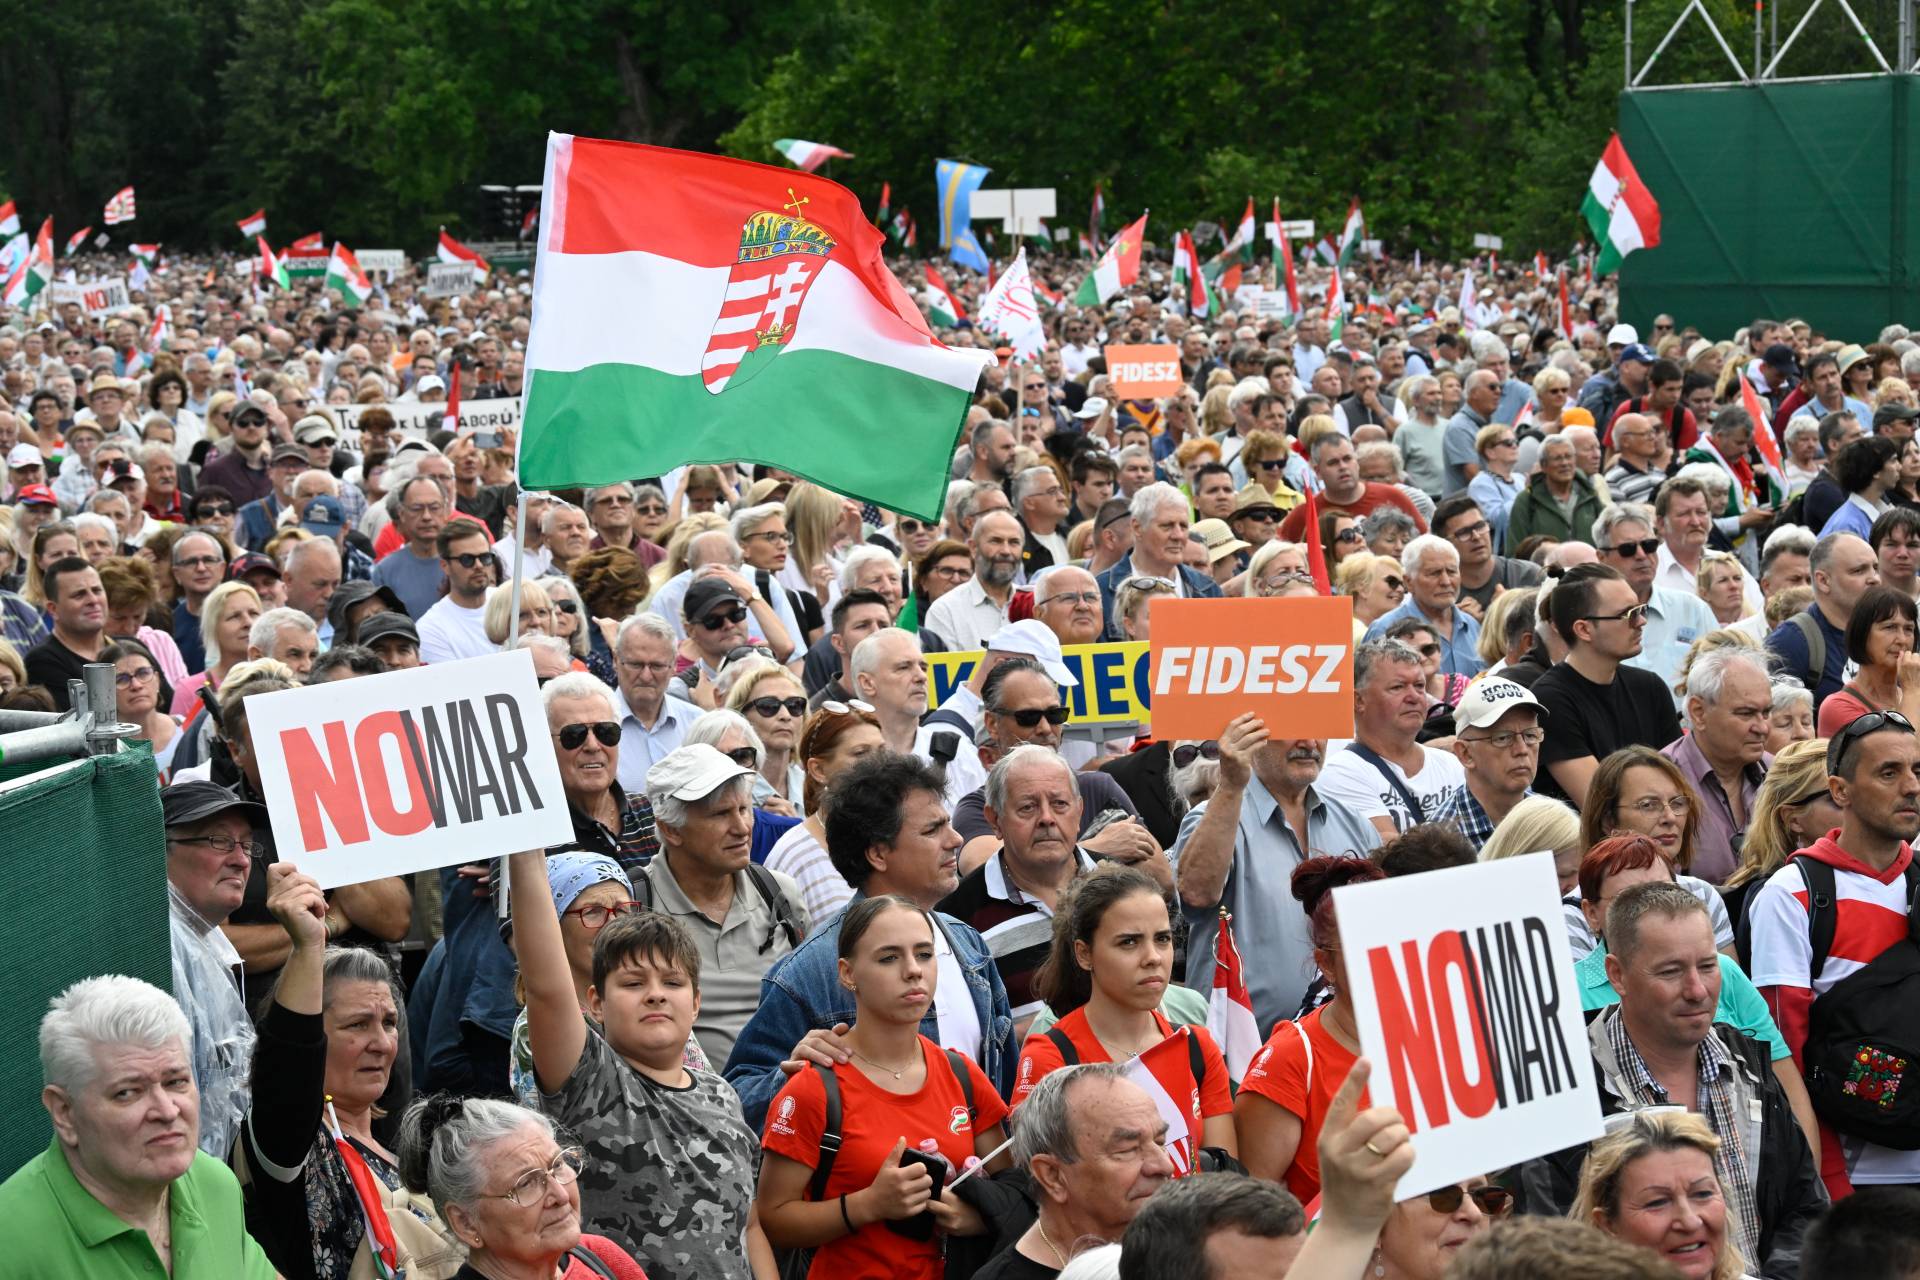 Békemenet: a szervezők szerint akár félmillióan is lehettek a rendezvényen